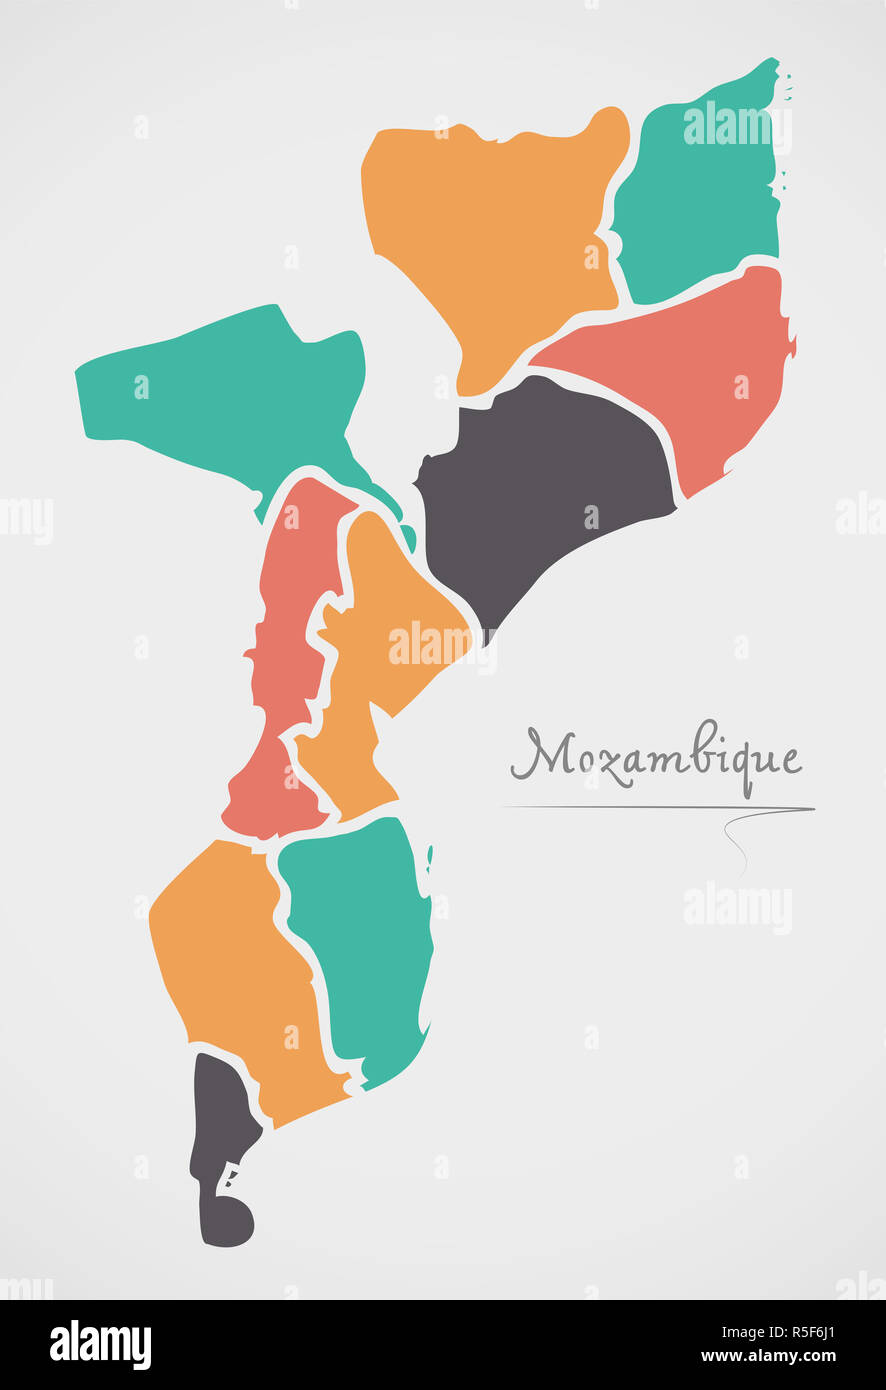 Carte Mozambique avec les états et les formes rondes modernes Banque D'Images